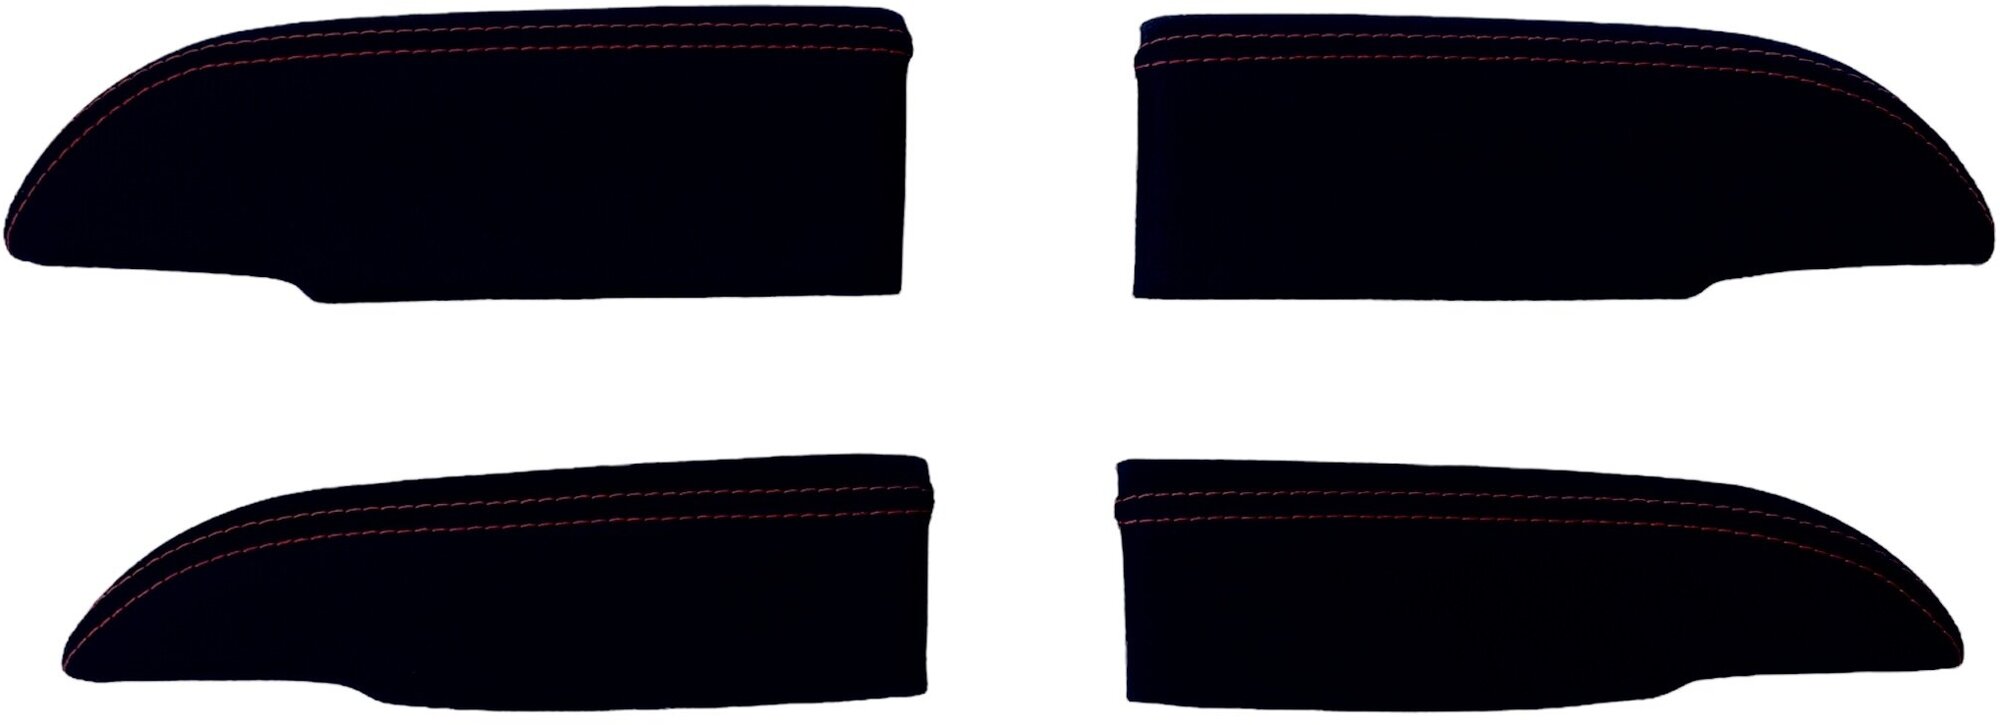 Накладки на подлокотники двери Premium для Лада Приора (красная строчка) 4 штуки